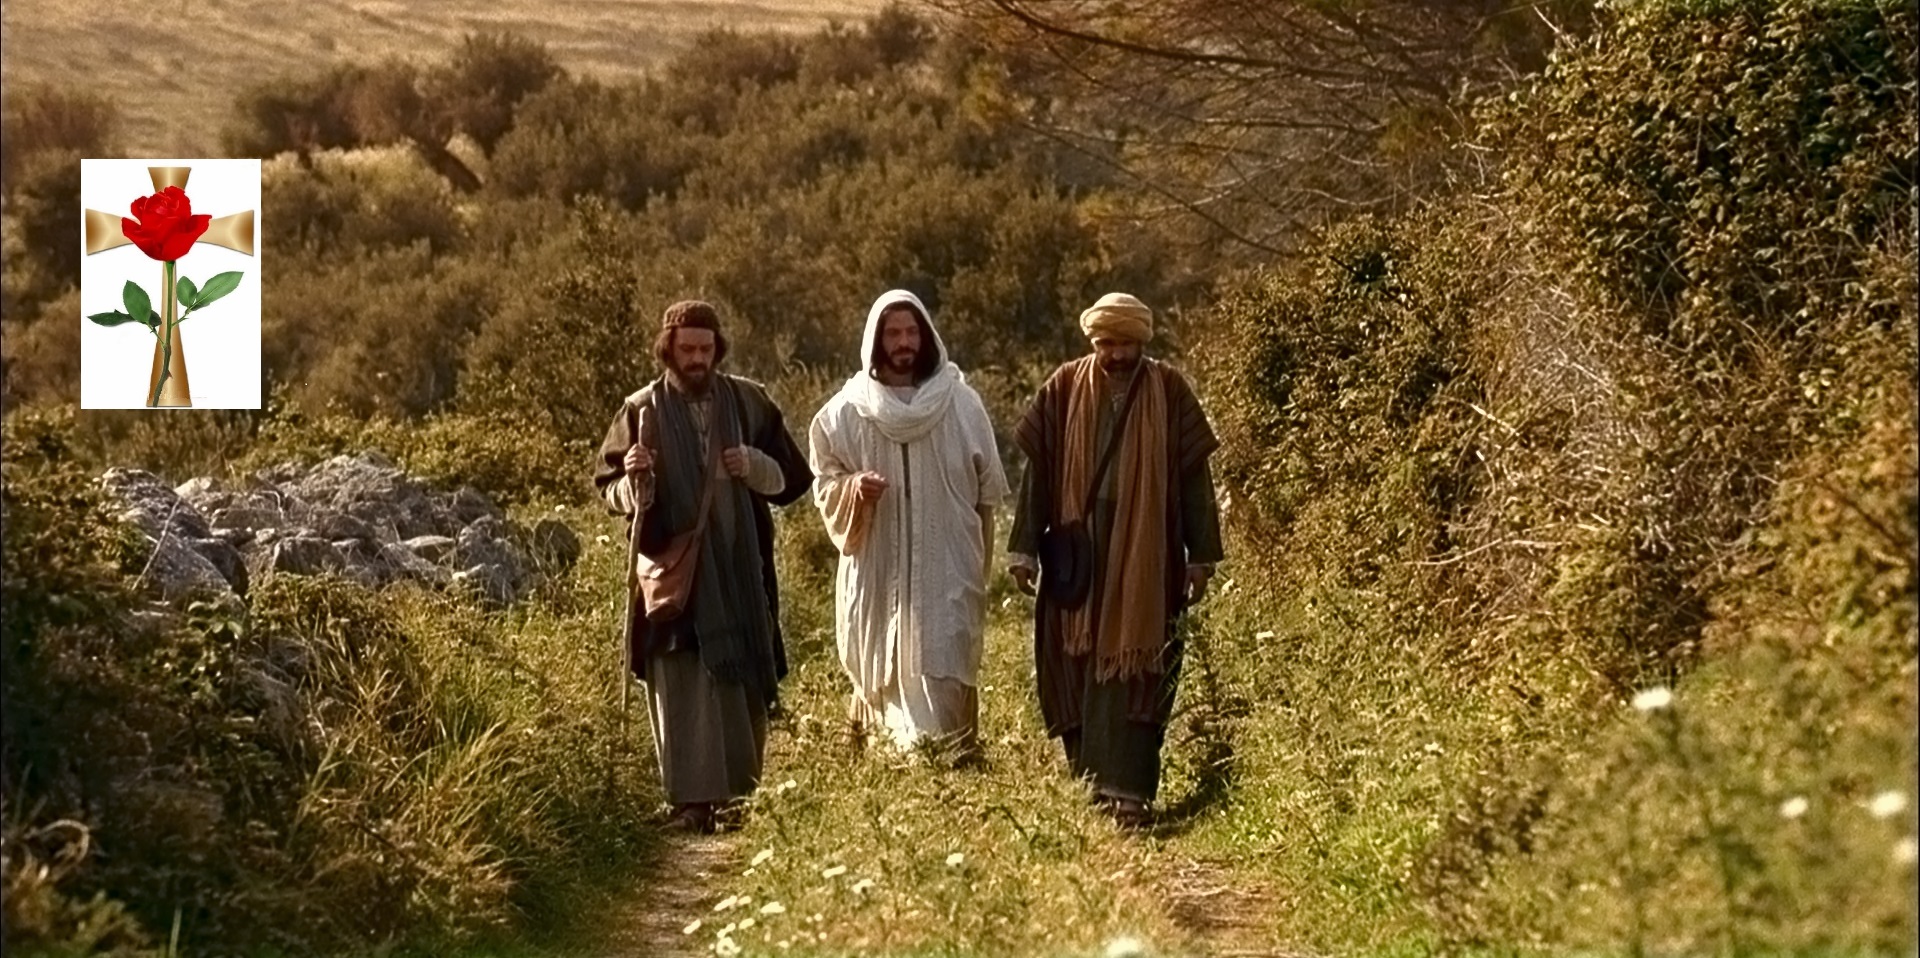 https://arquimedia.s3.amazonaws.com/63/jesus/camino-emausjpg.jpg